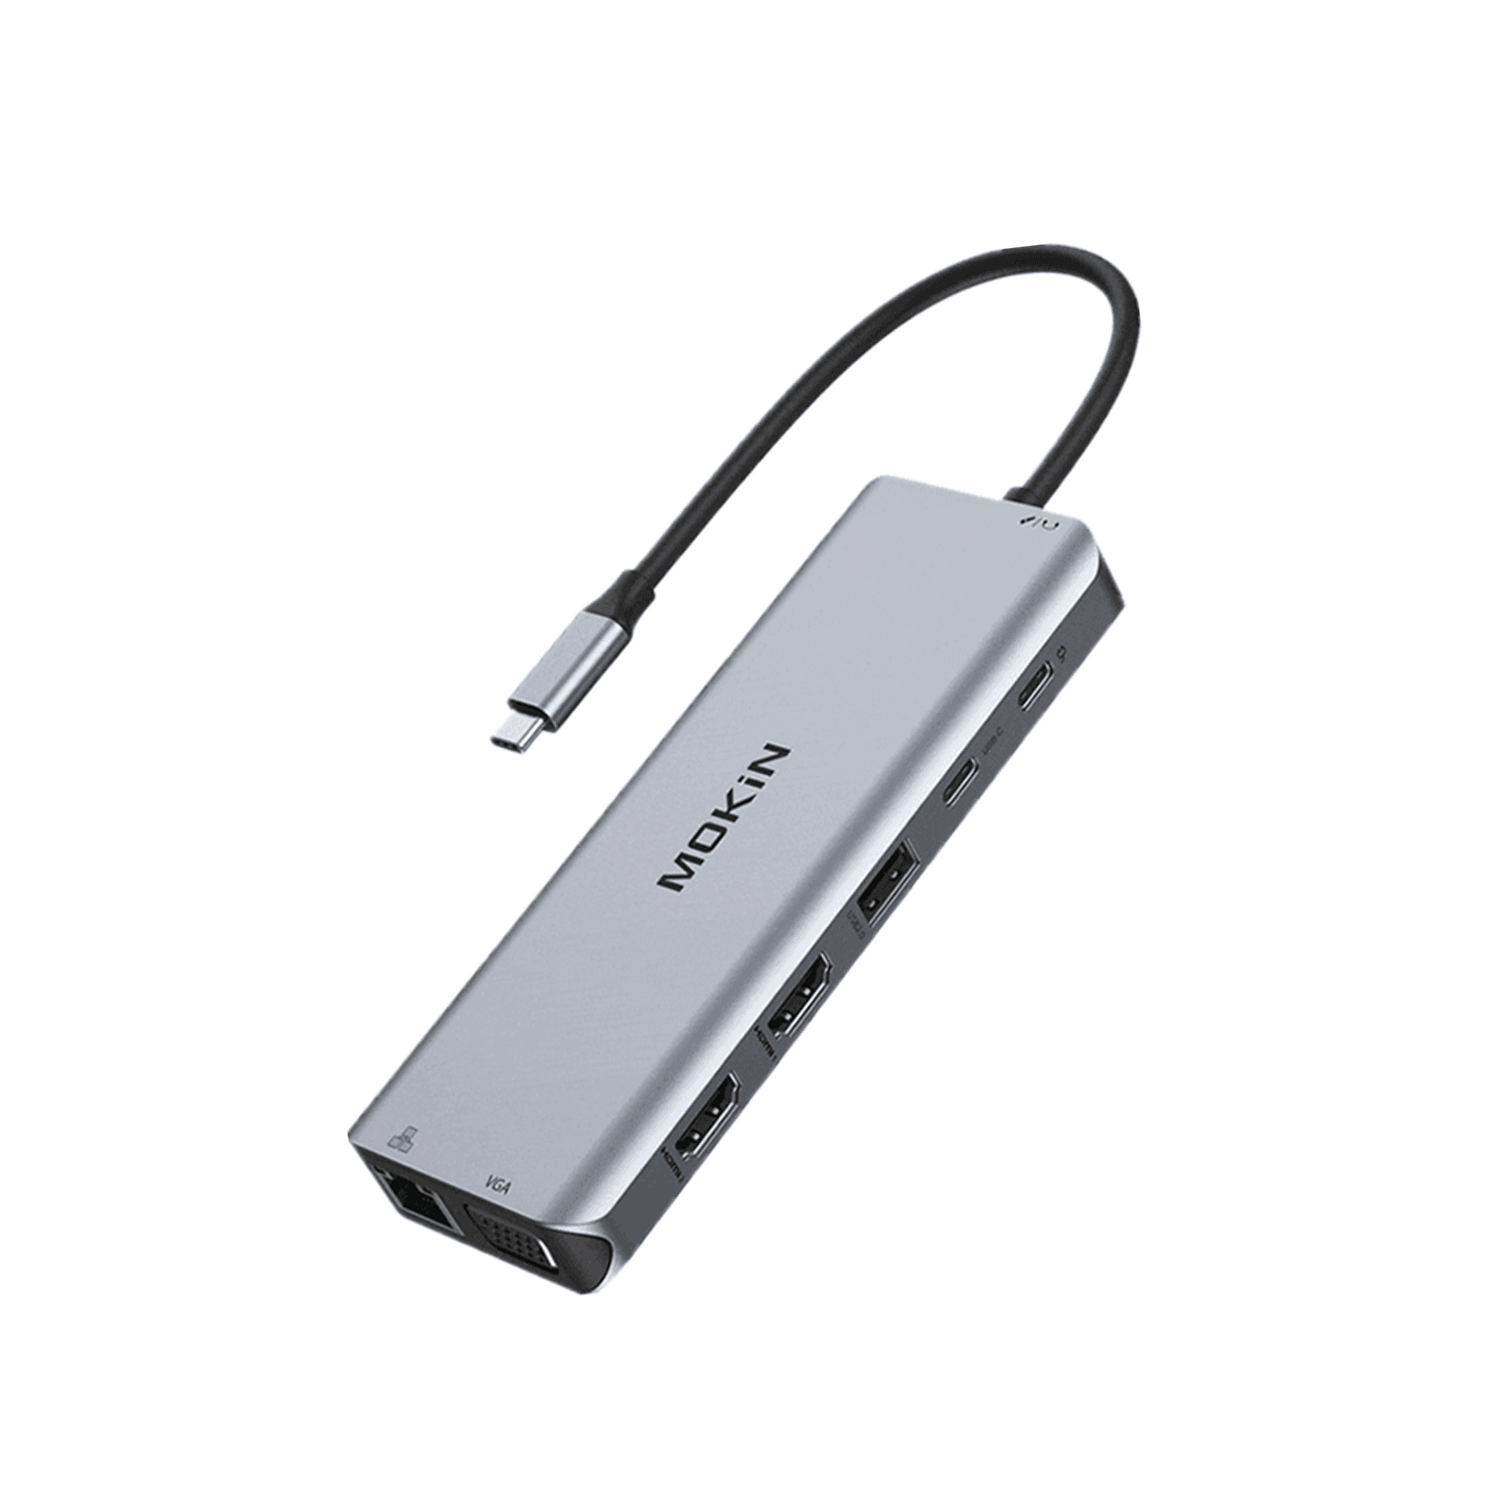 Chargeur pour ordinateur portable HP 65 W GaN USB-C - HP Store France